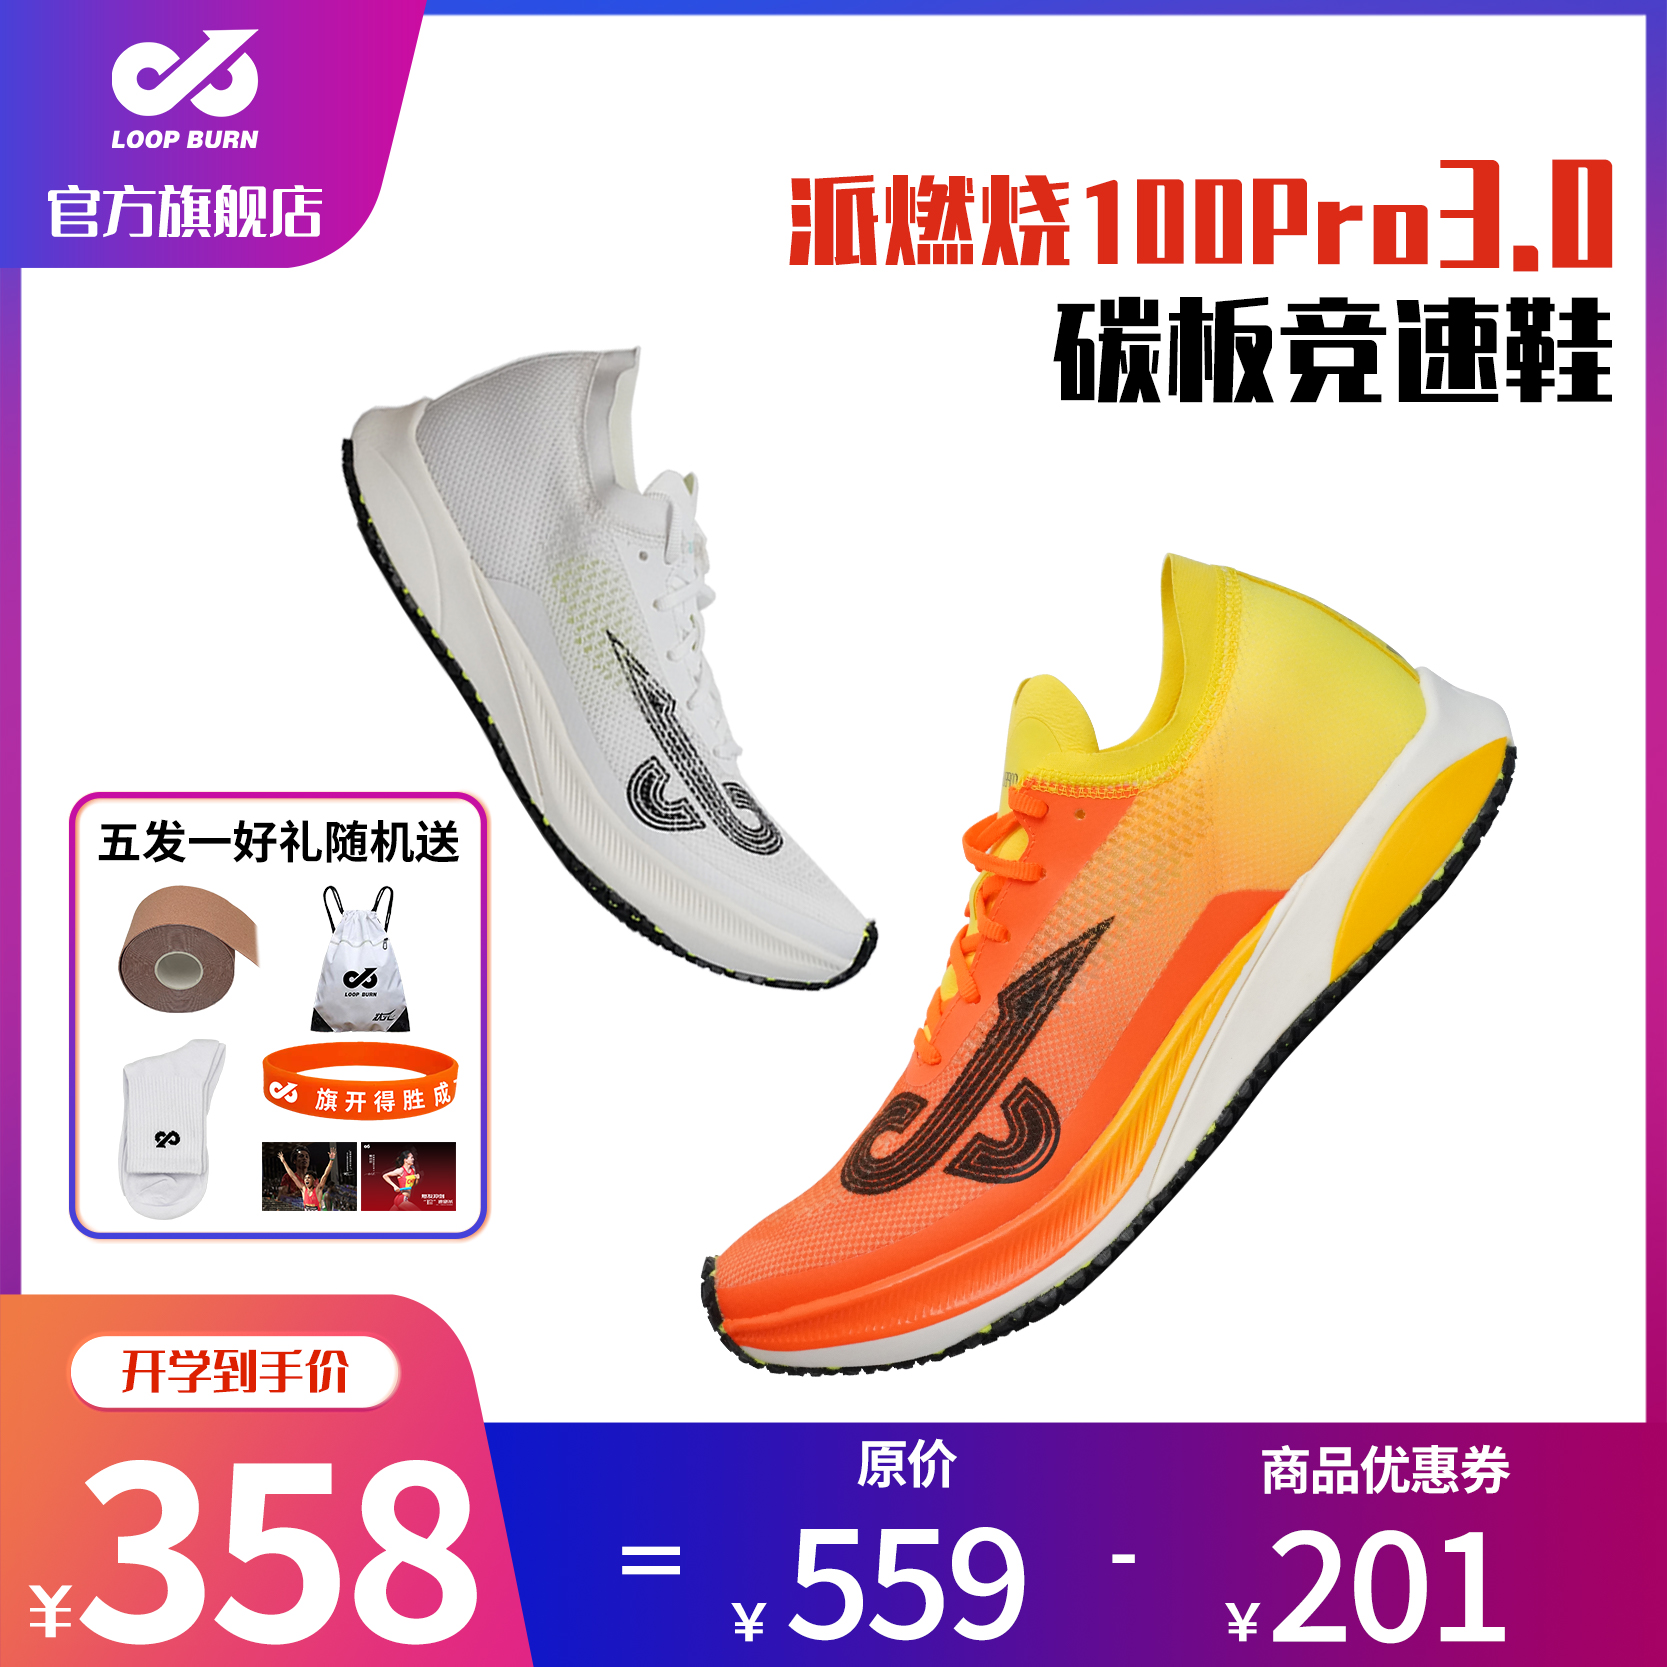 派燃烧官方旗舰三代碳板竞速鞋3.0